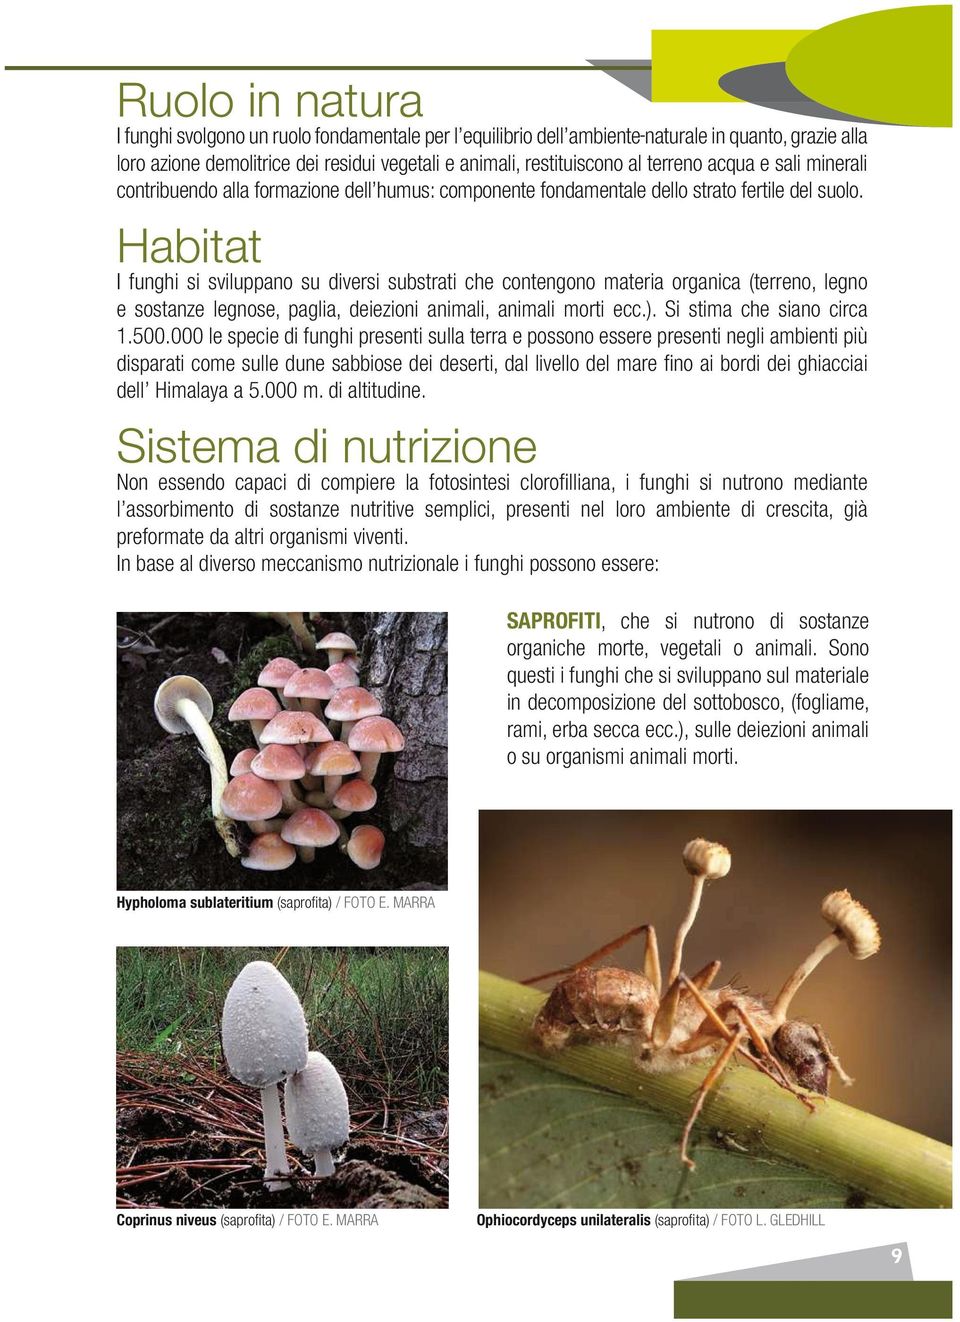 Habitat I funghi si sviluppano su diversi substrati che contengono materia organica (terreno, legno e sostanze legnose, paglia, deiezioni animali, animali morti ecc.). Si stima che siano circa 1.500.